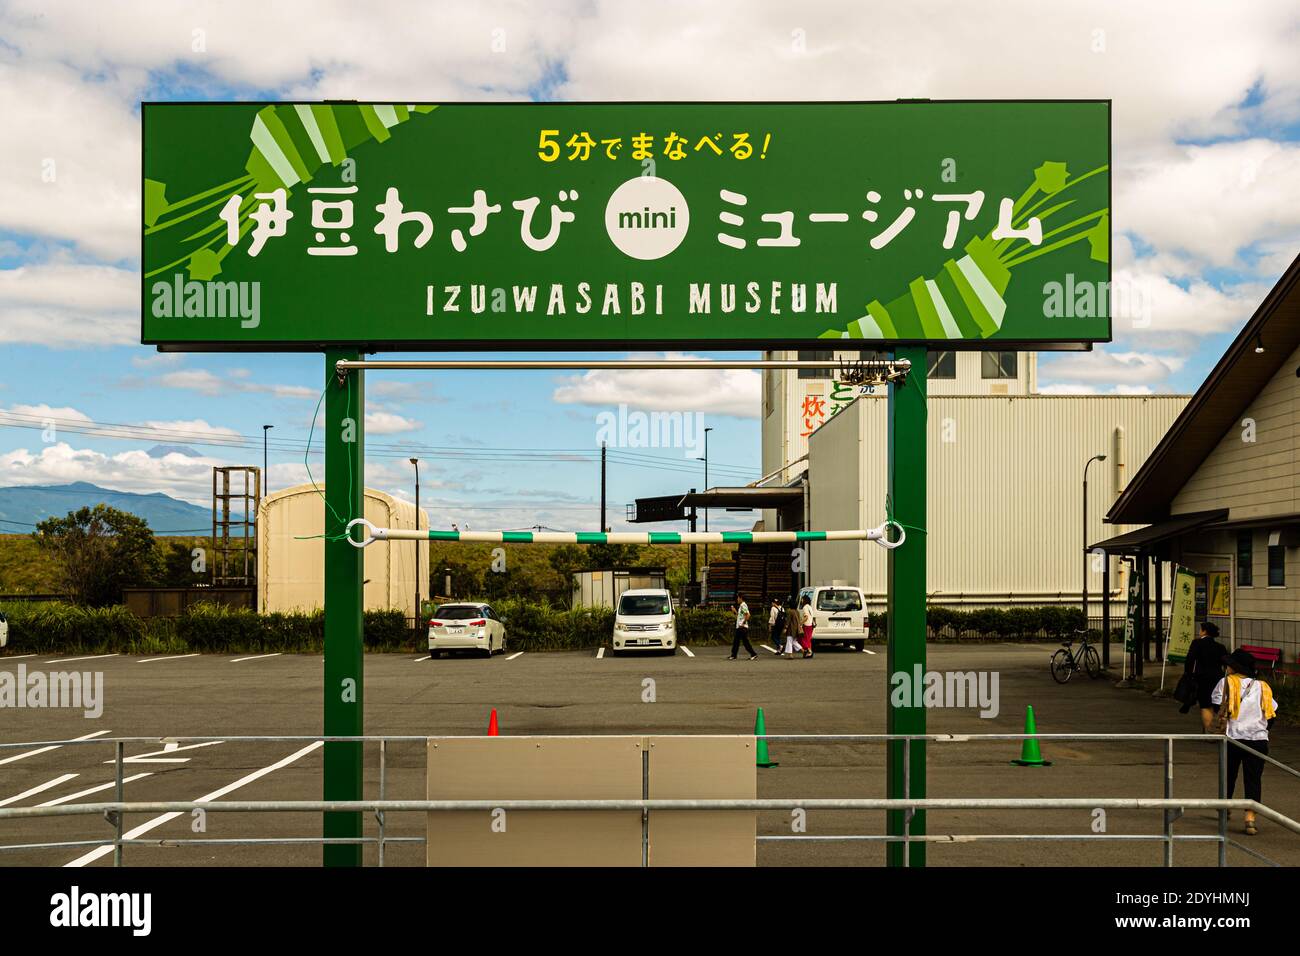 Museo Izu Wasabi in Giappone, Prefettura di Shizuoka. Izu è l'unica regione in Giappone dove si coltiva il wasabi. La pianta esigente richiede un microclima molto specifico ed è in industria importante sulla penisola. Foto Stock